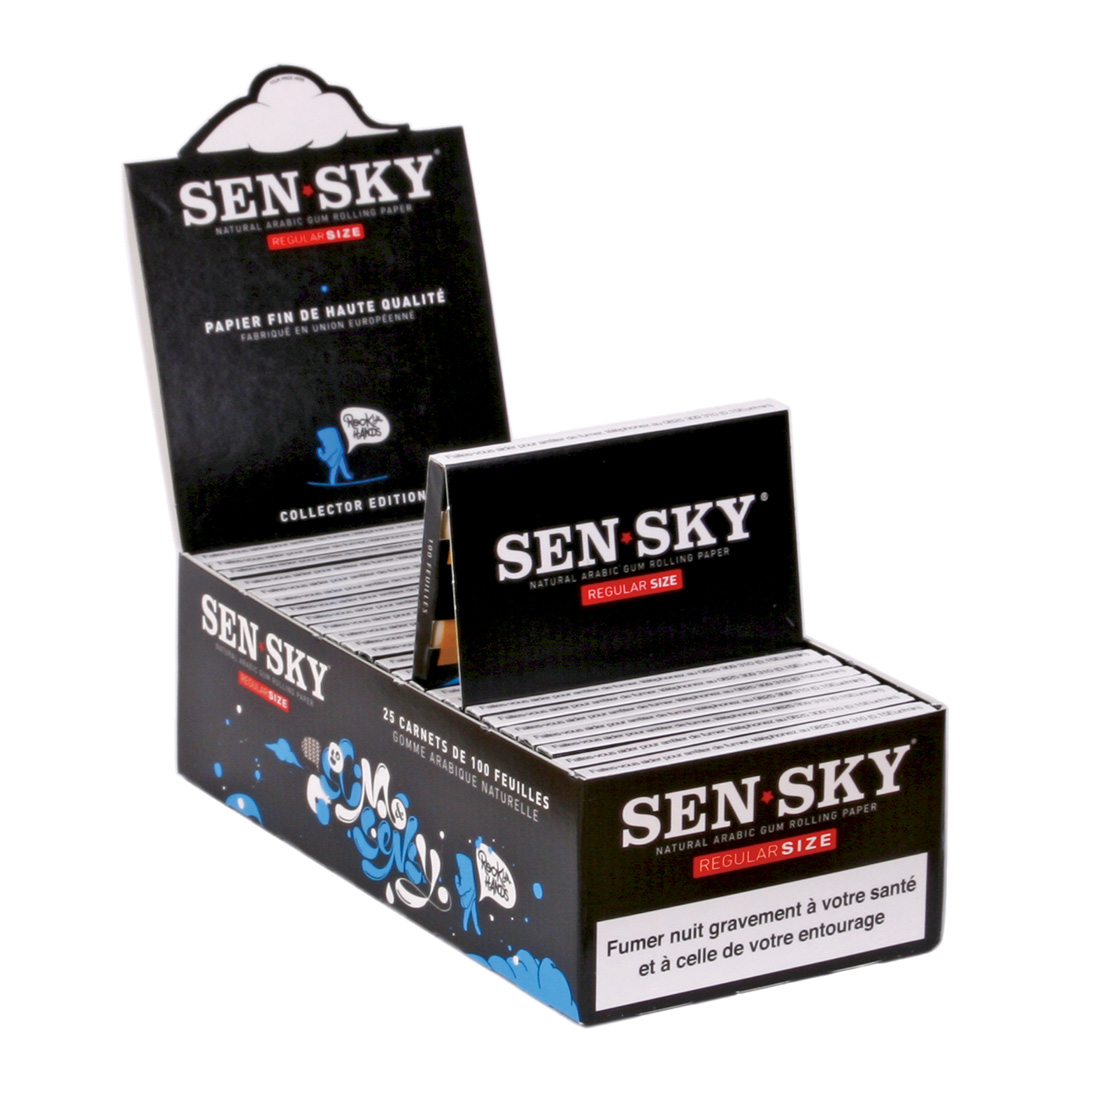 Sensky regular 2 box de 25 carnets de feuille à rouler courte 